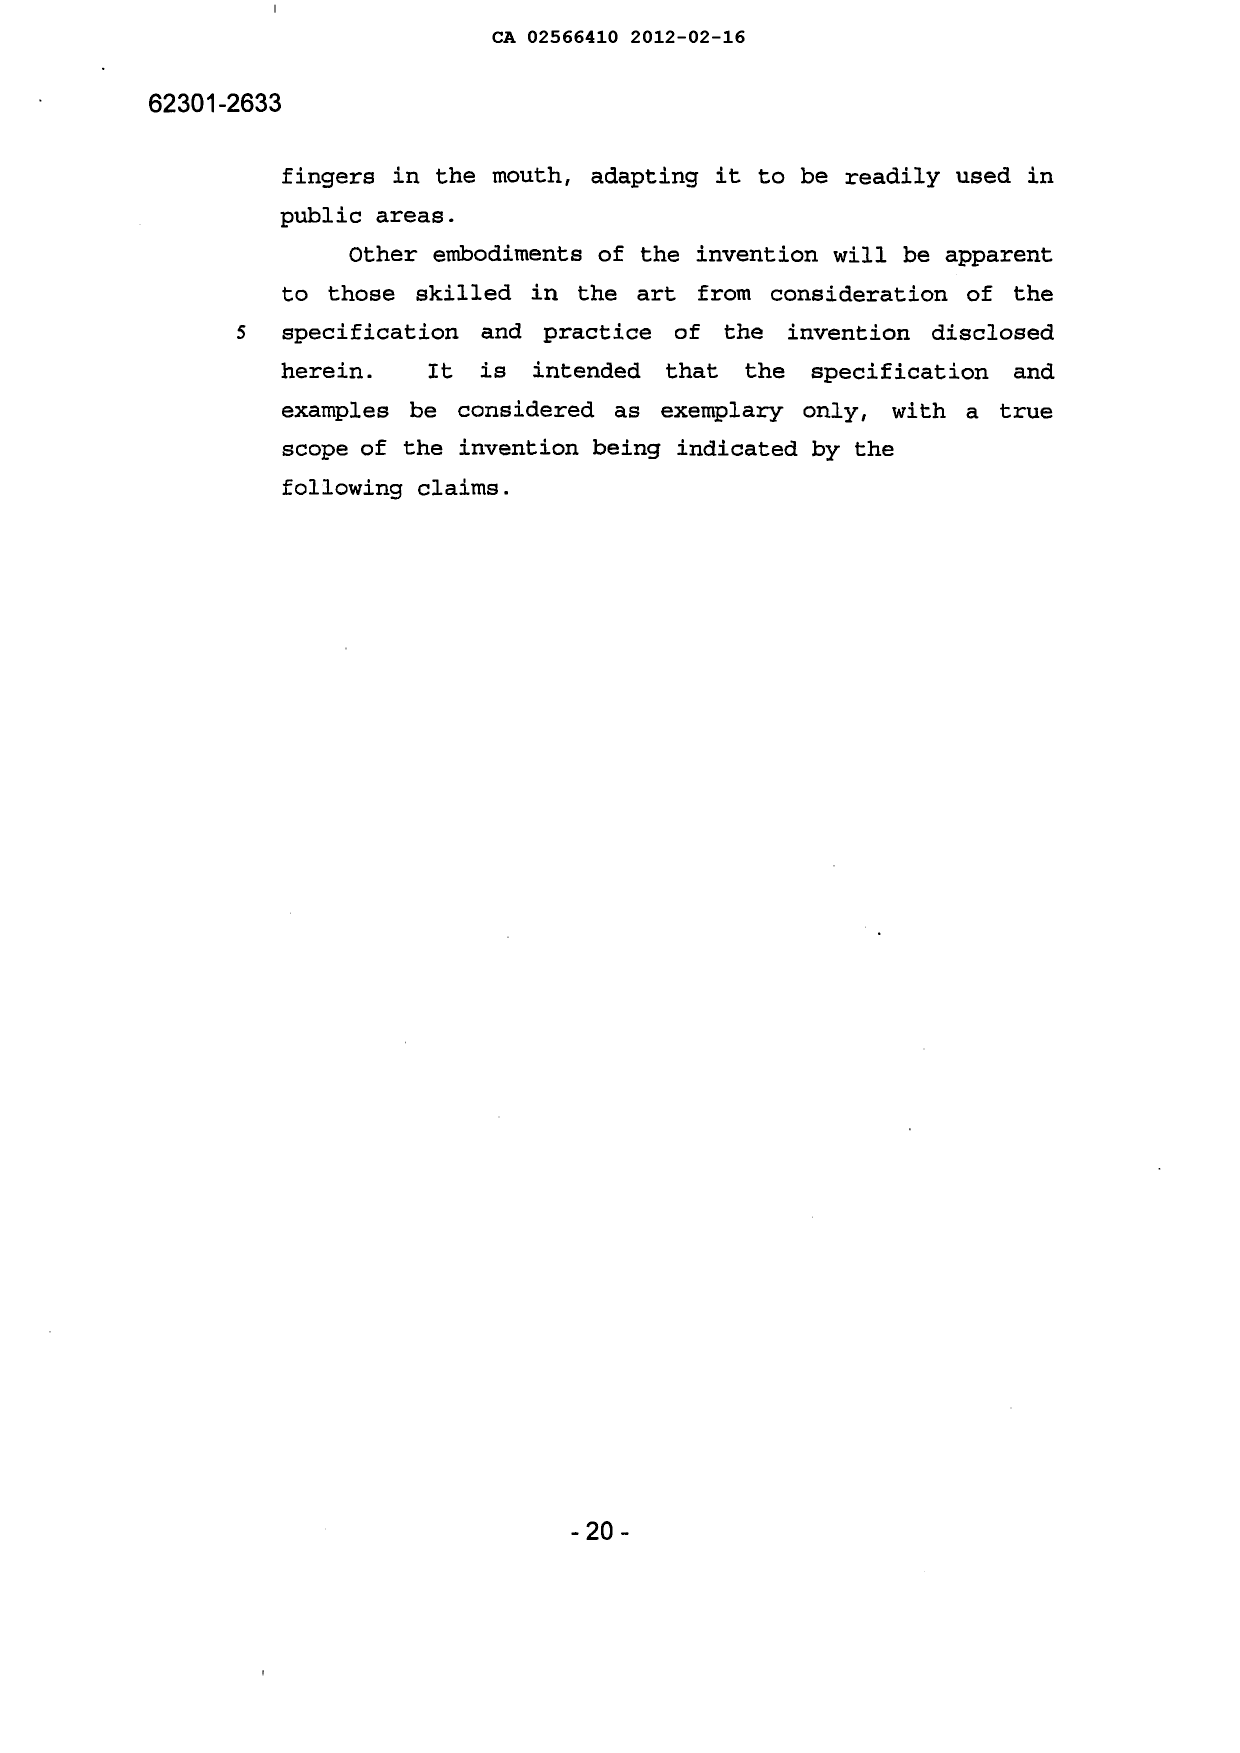 Canadian Patent Document 2566410. Description 20120216. Image 21 of 21